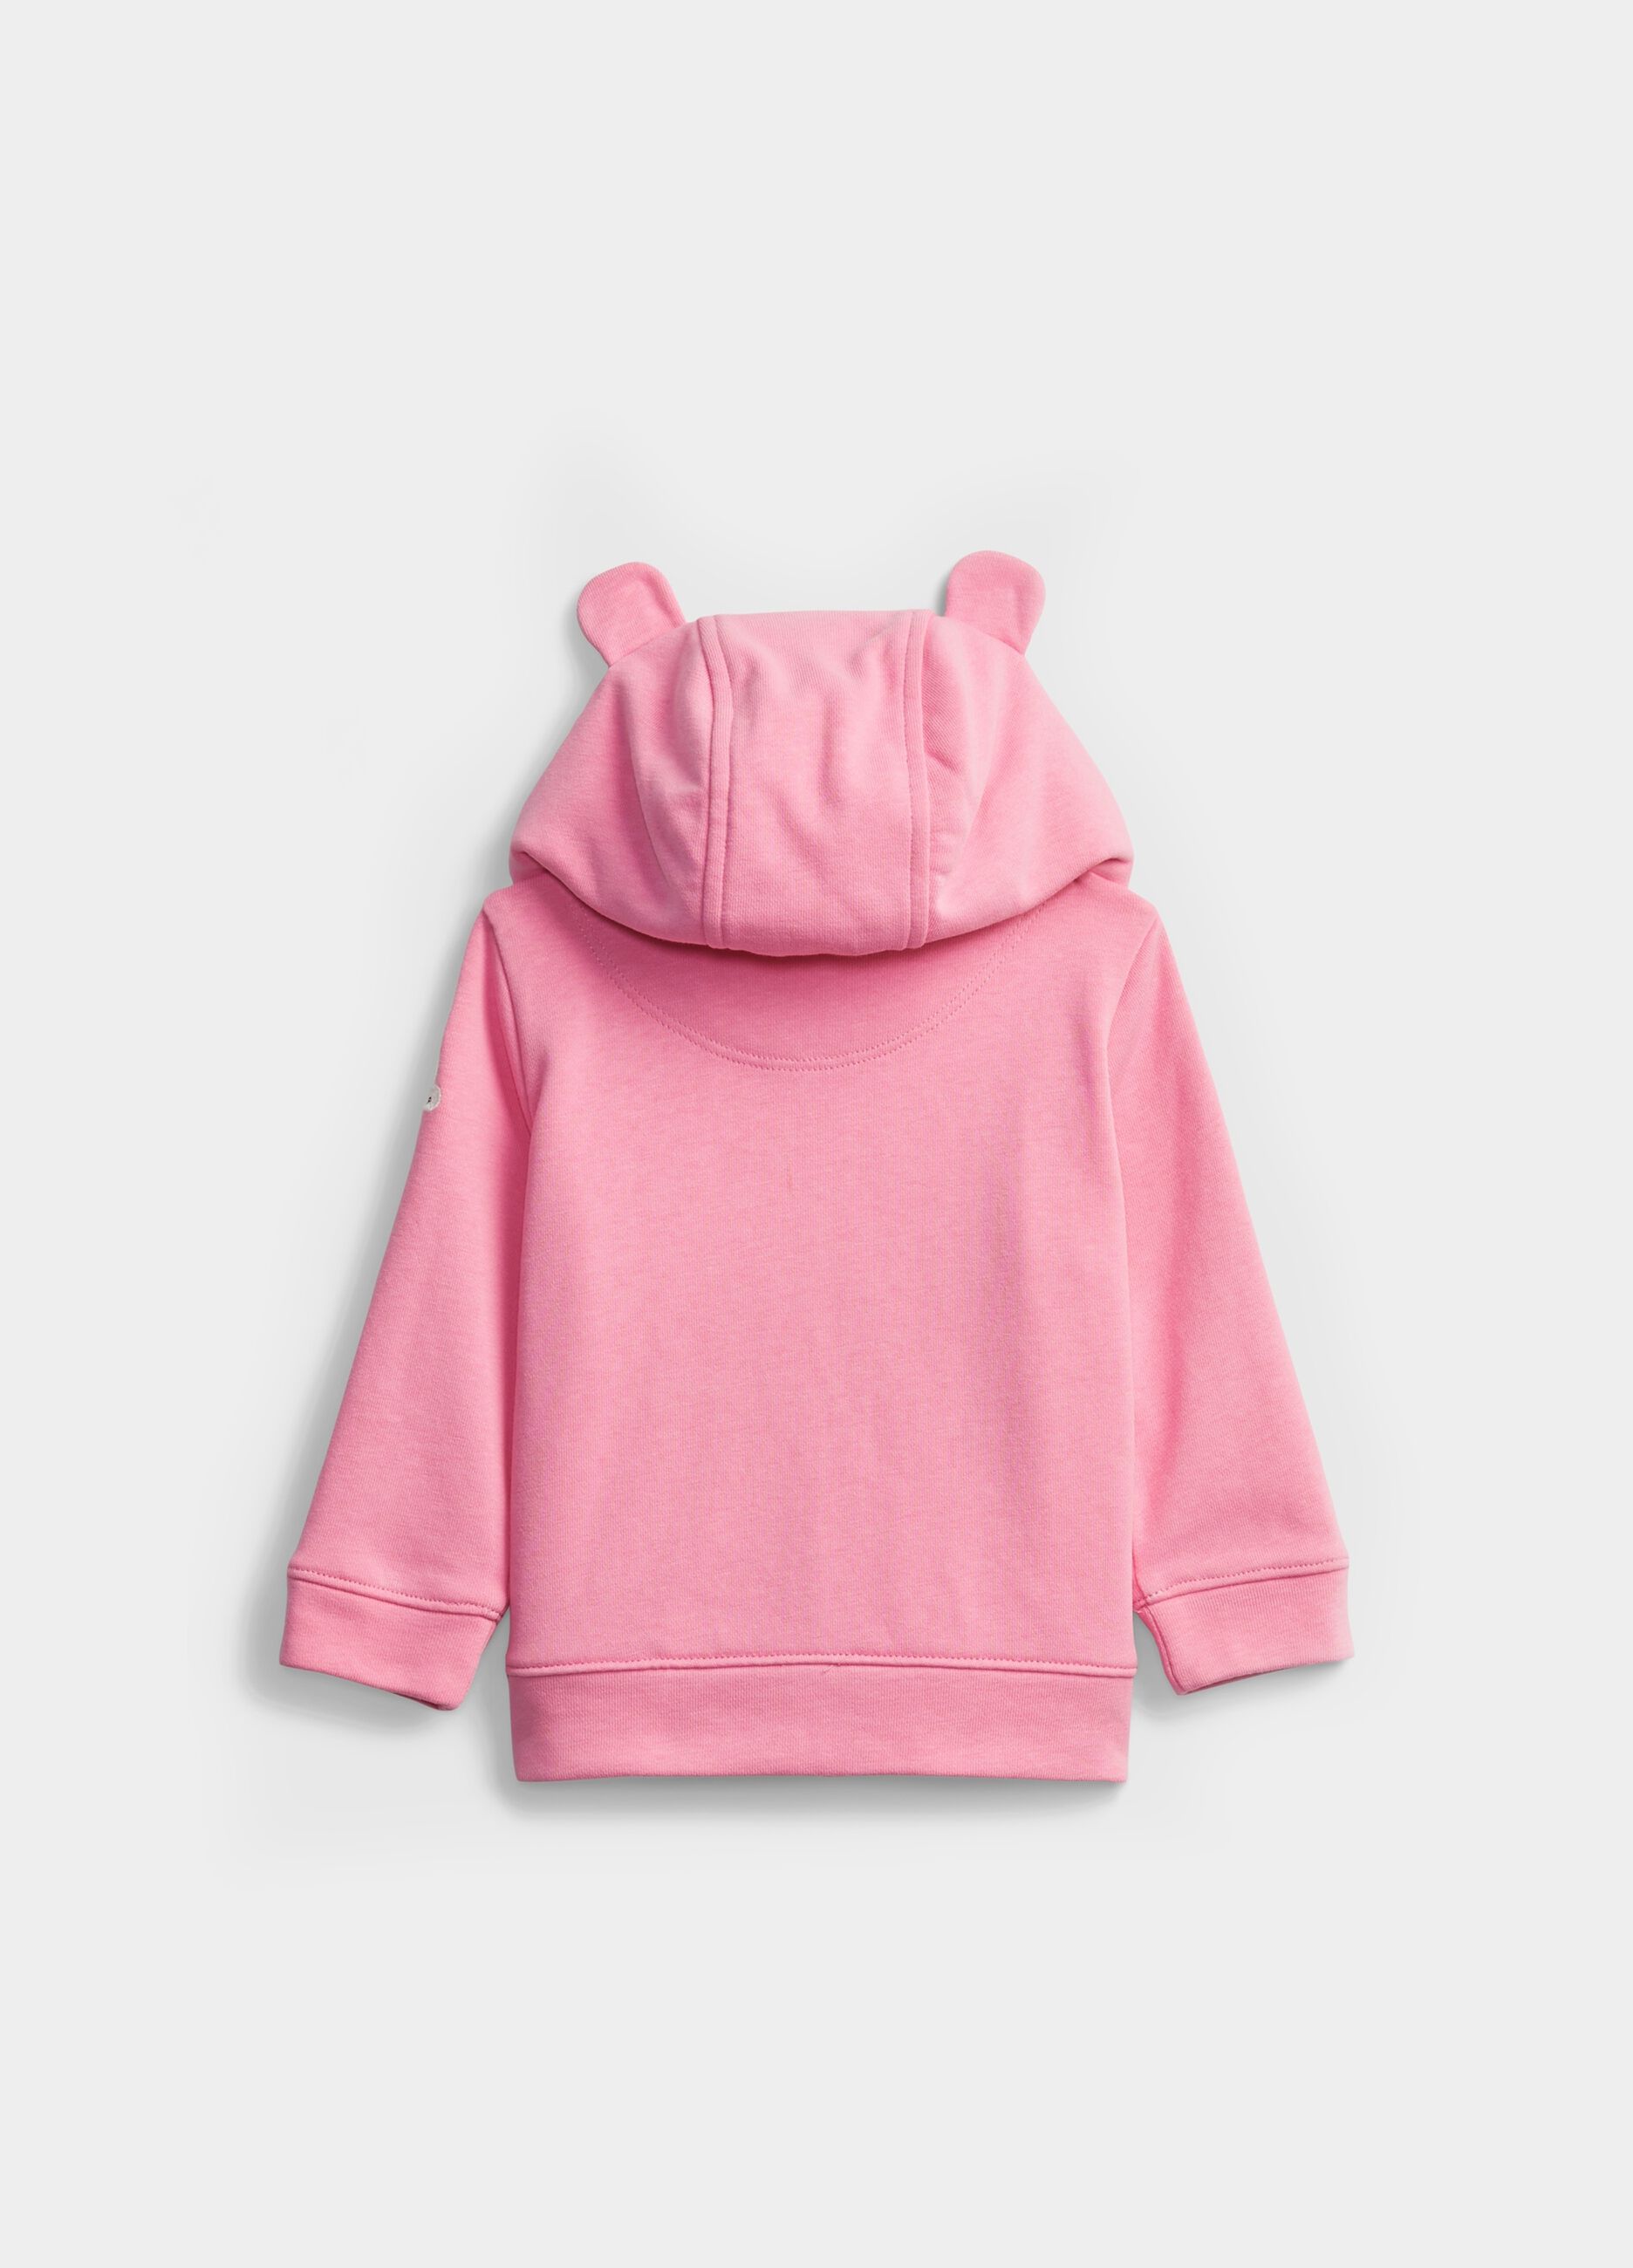 Full-zip sweatshirt with hood and ears